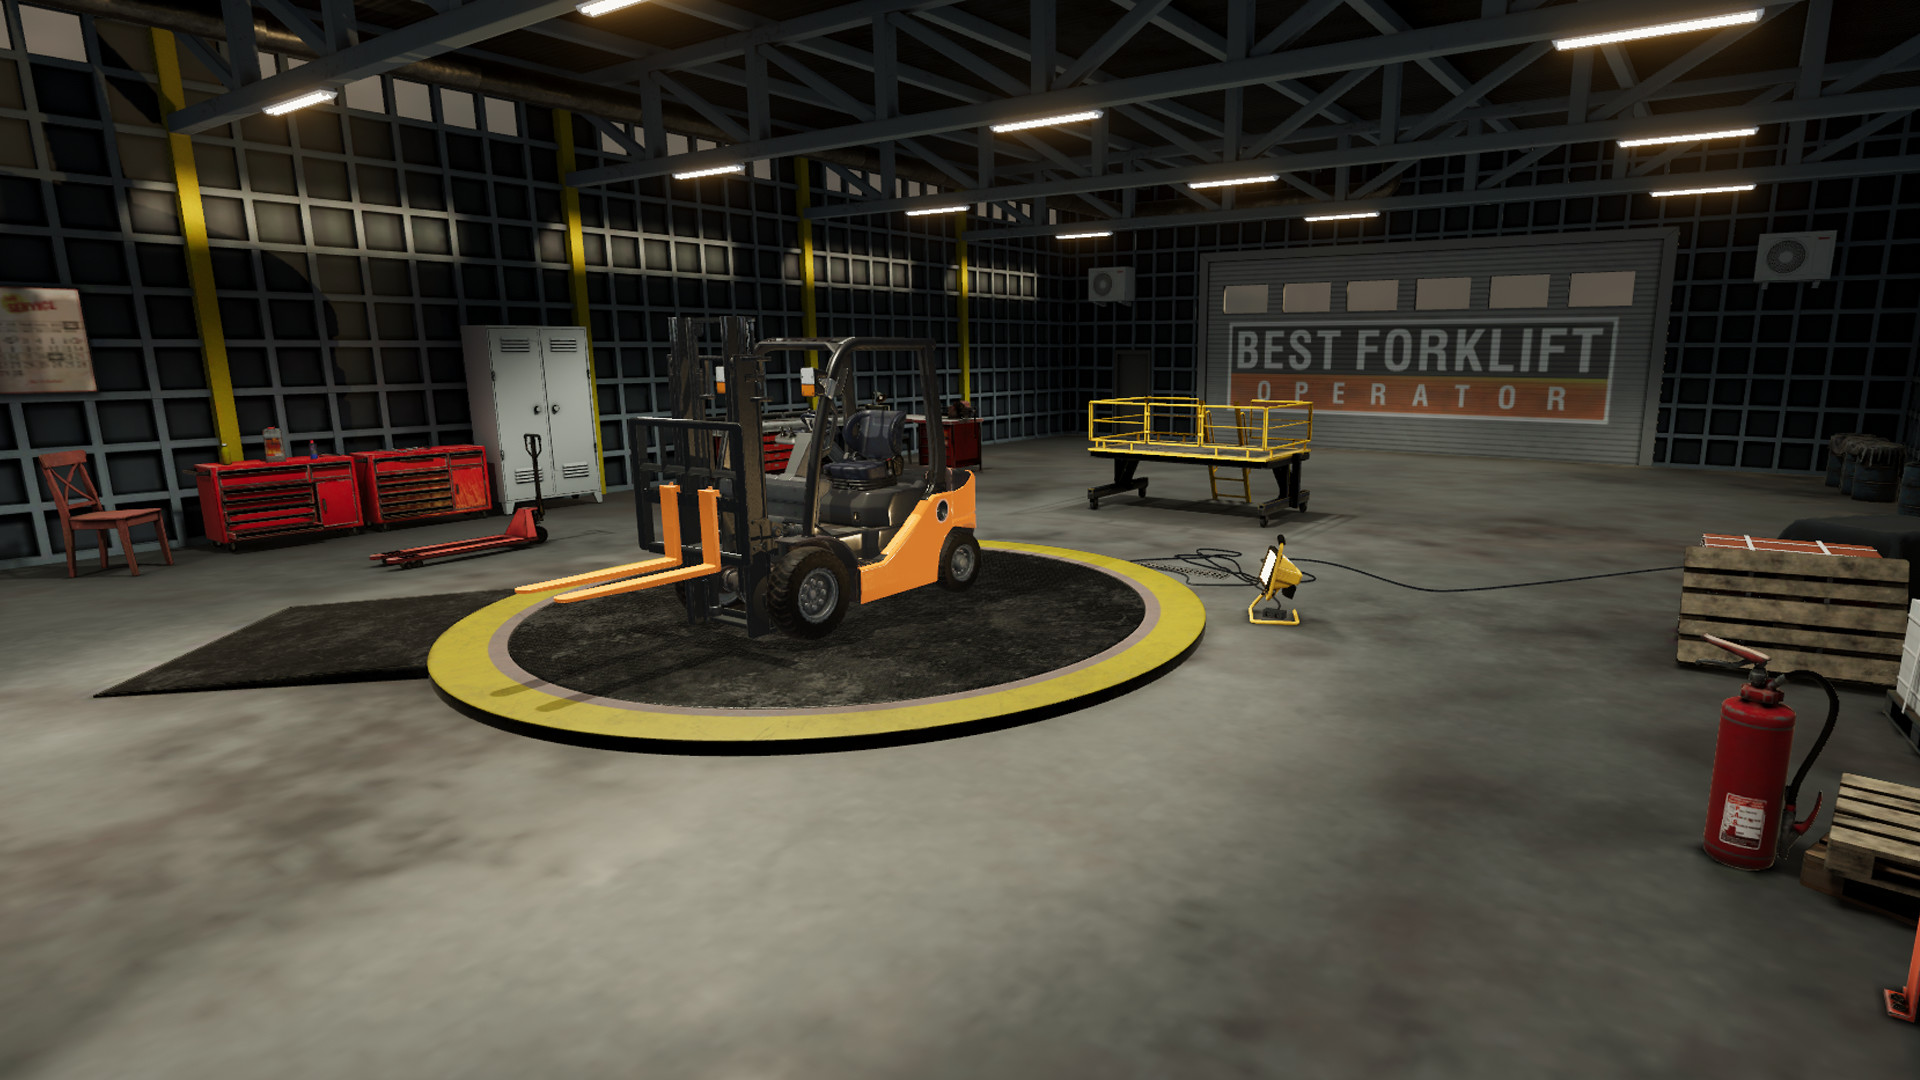 download Best Forklift Operator via torrent